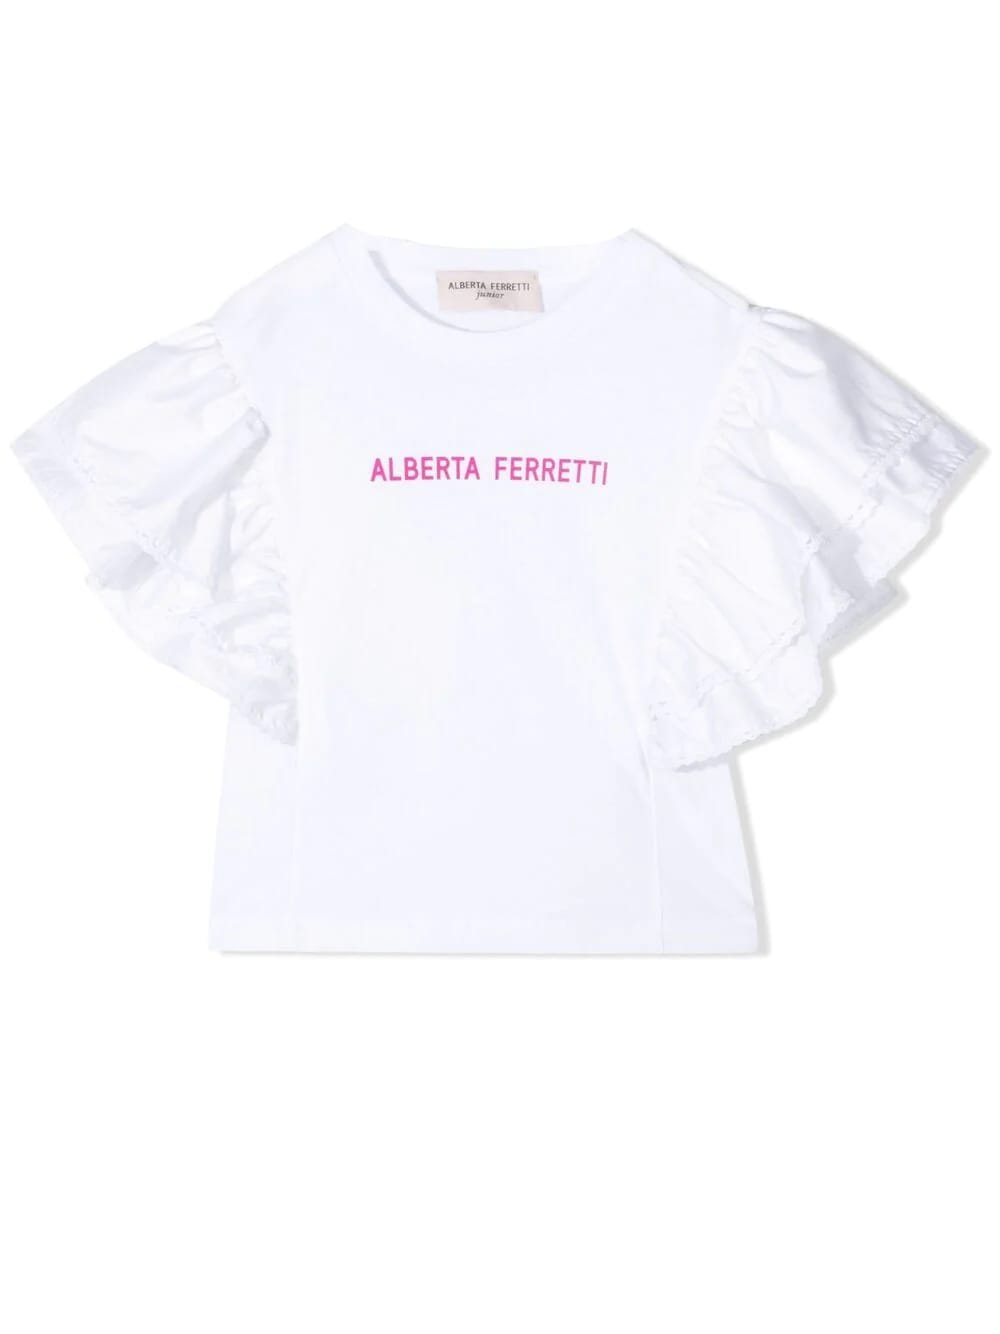 ALBERTA FERRETTI PRINT T-SHIRT,027815 002